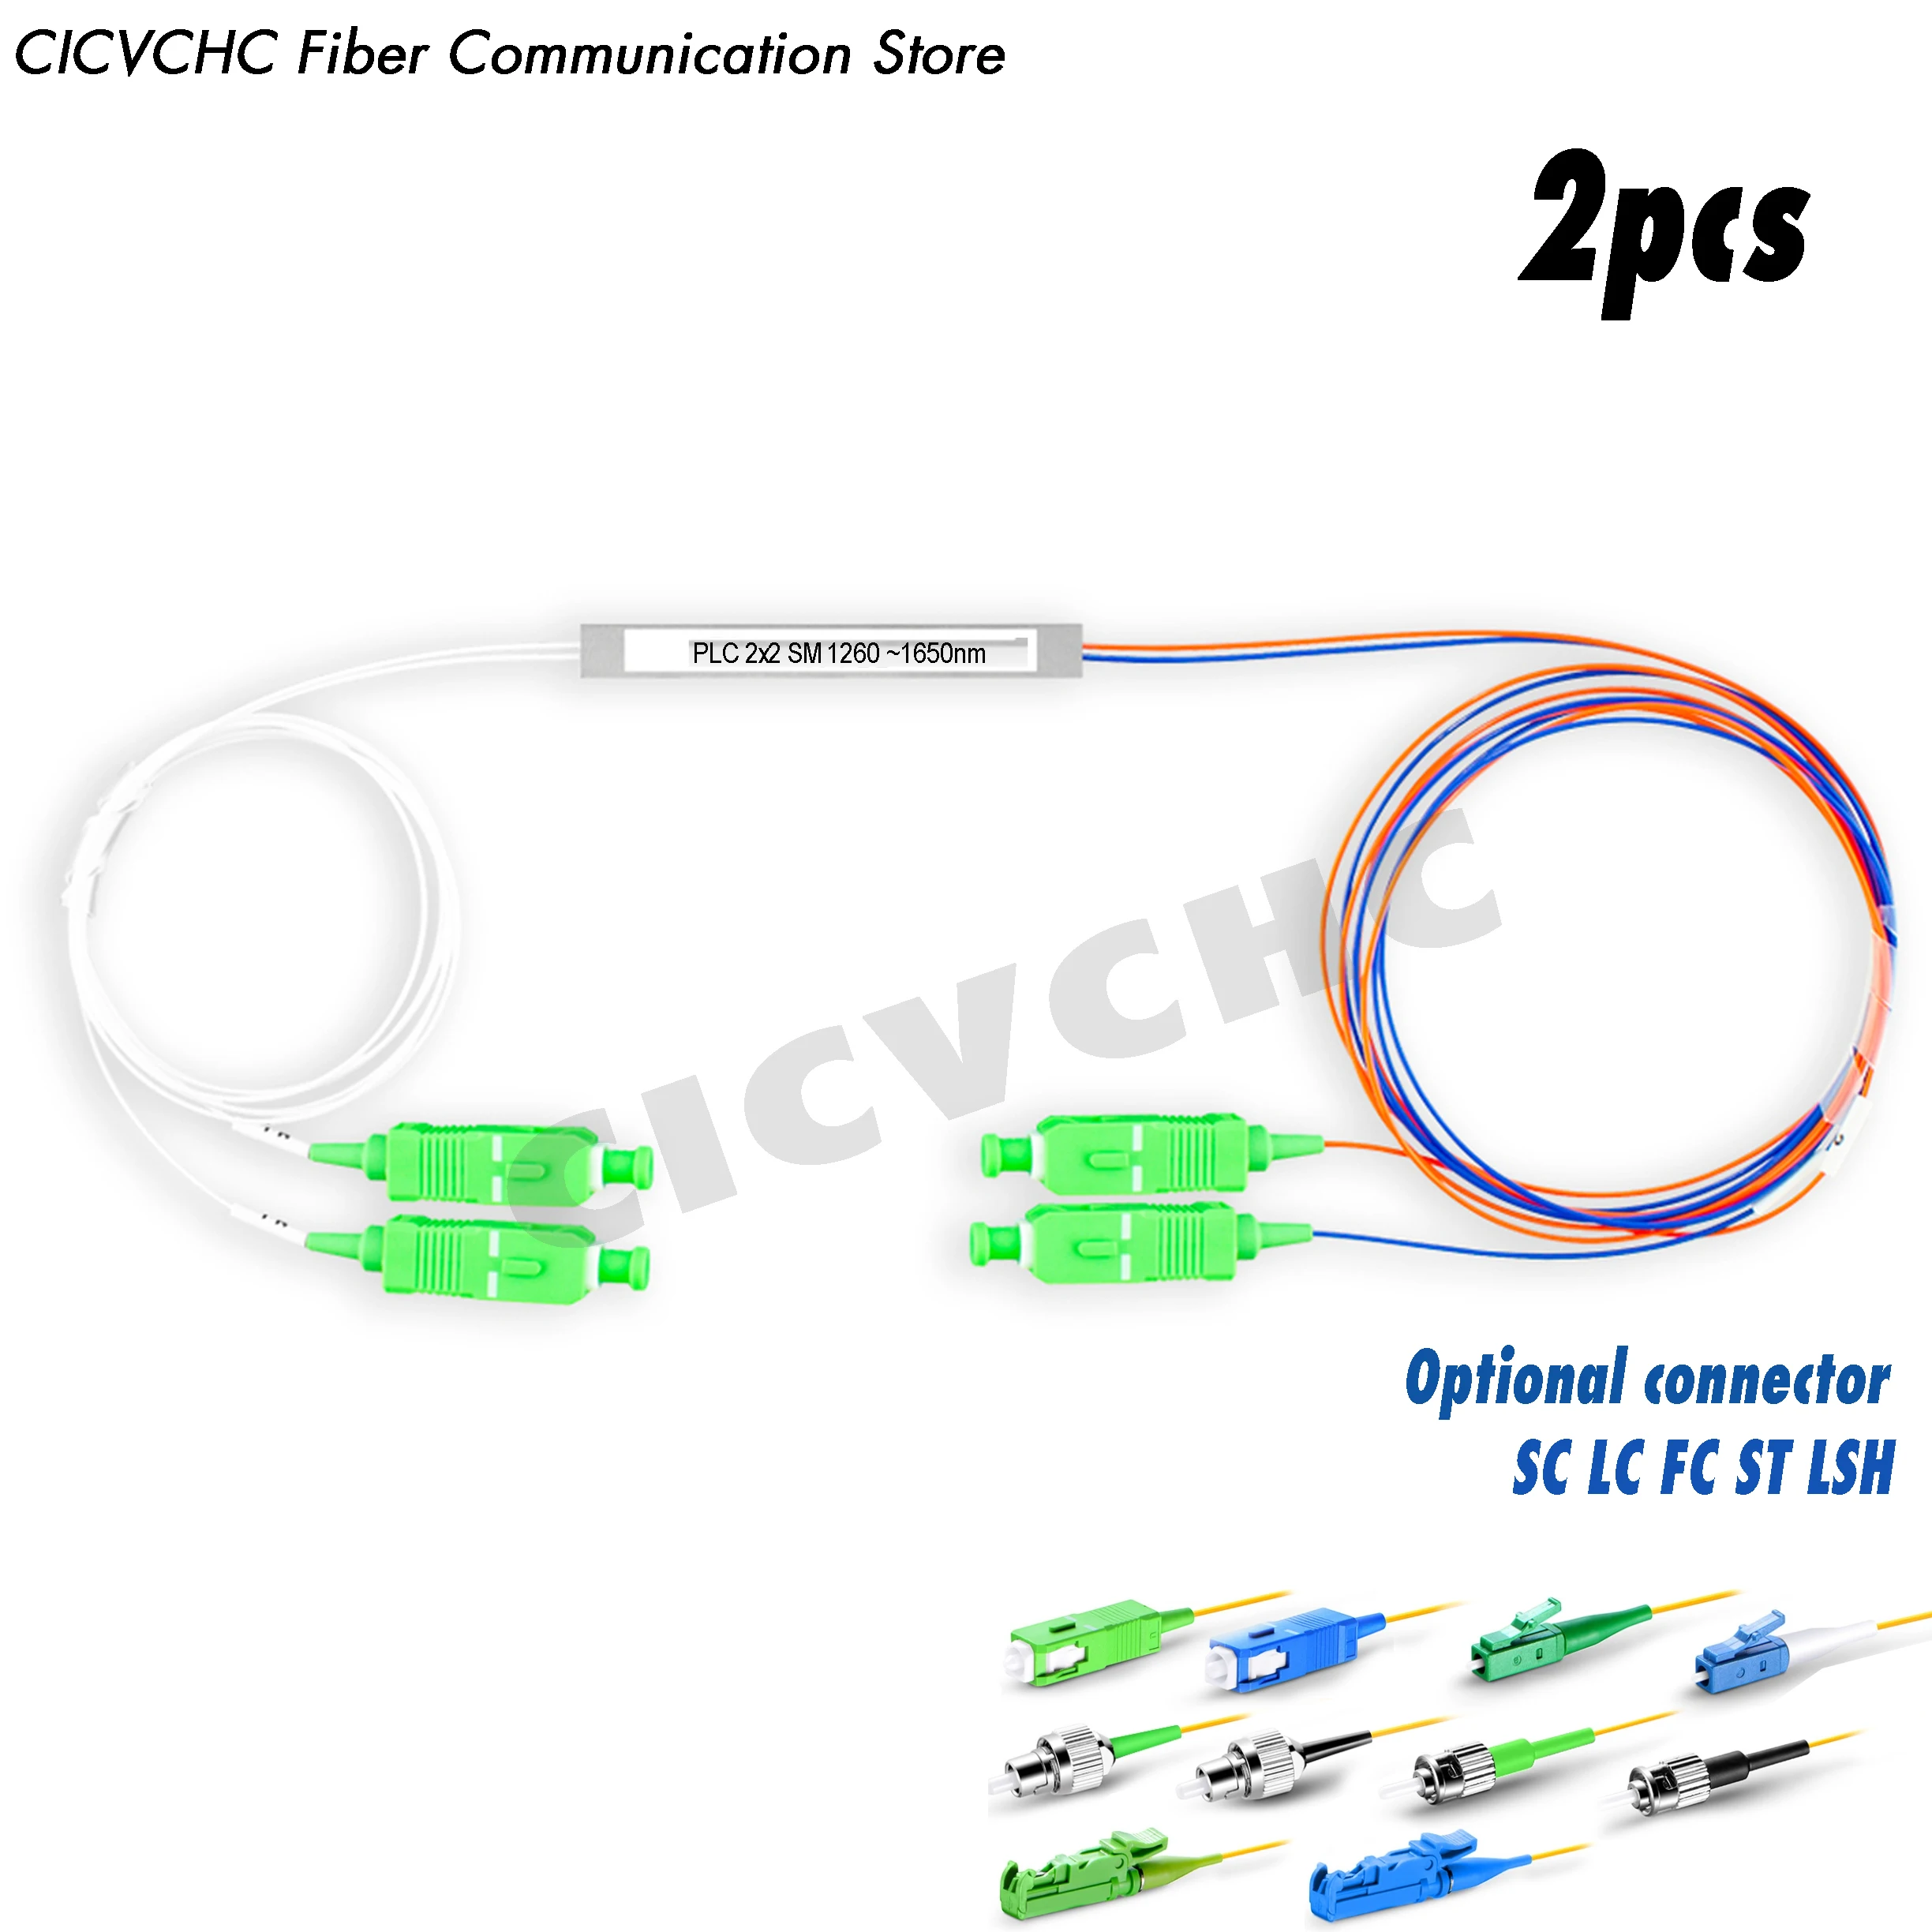 2pcs 2x2 PLC Fiber Splitter, Mini Module with SC, LC, FC, ST, LSH connector